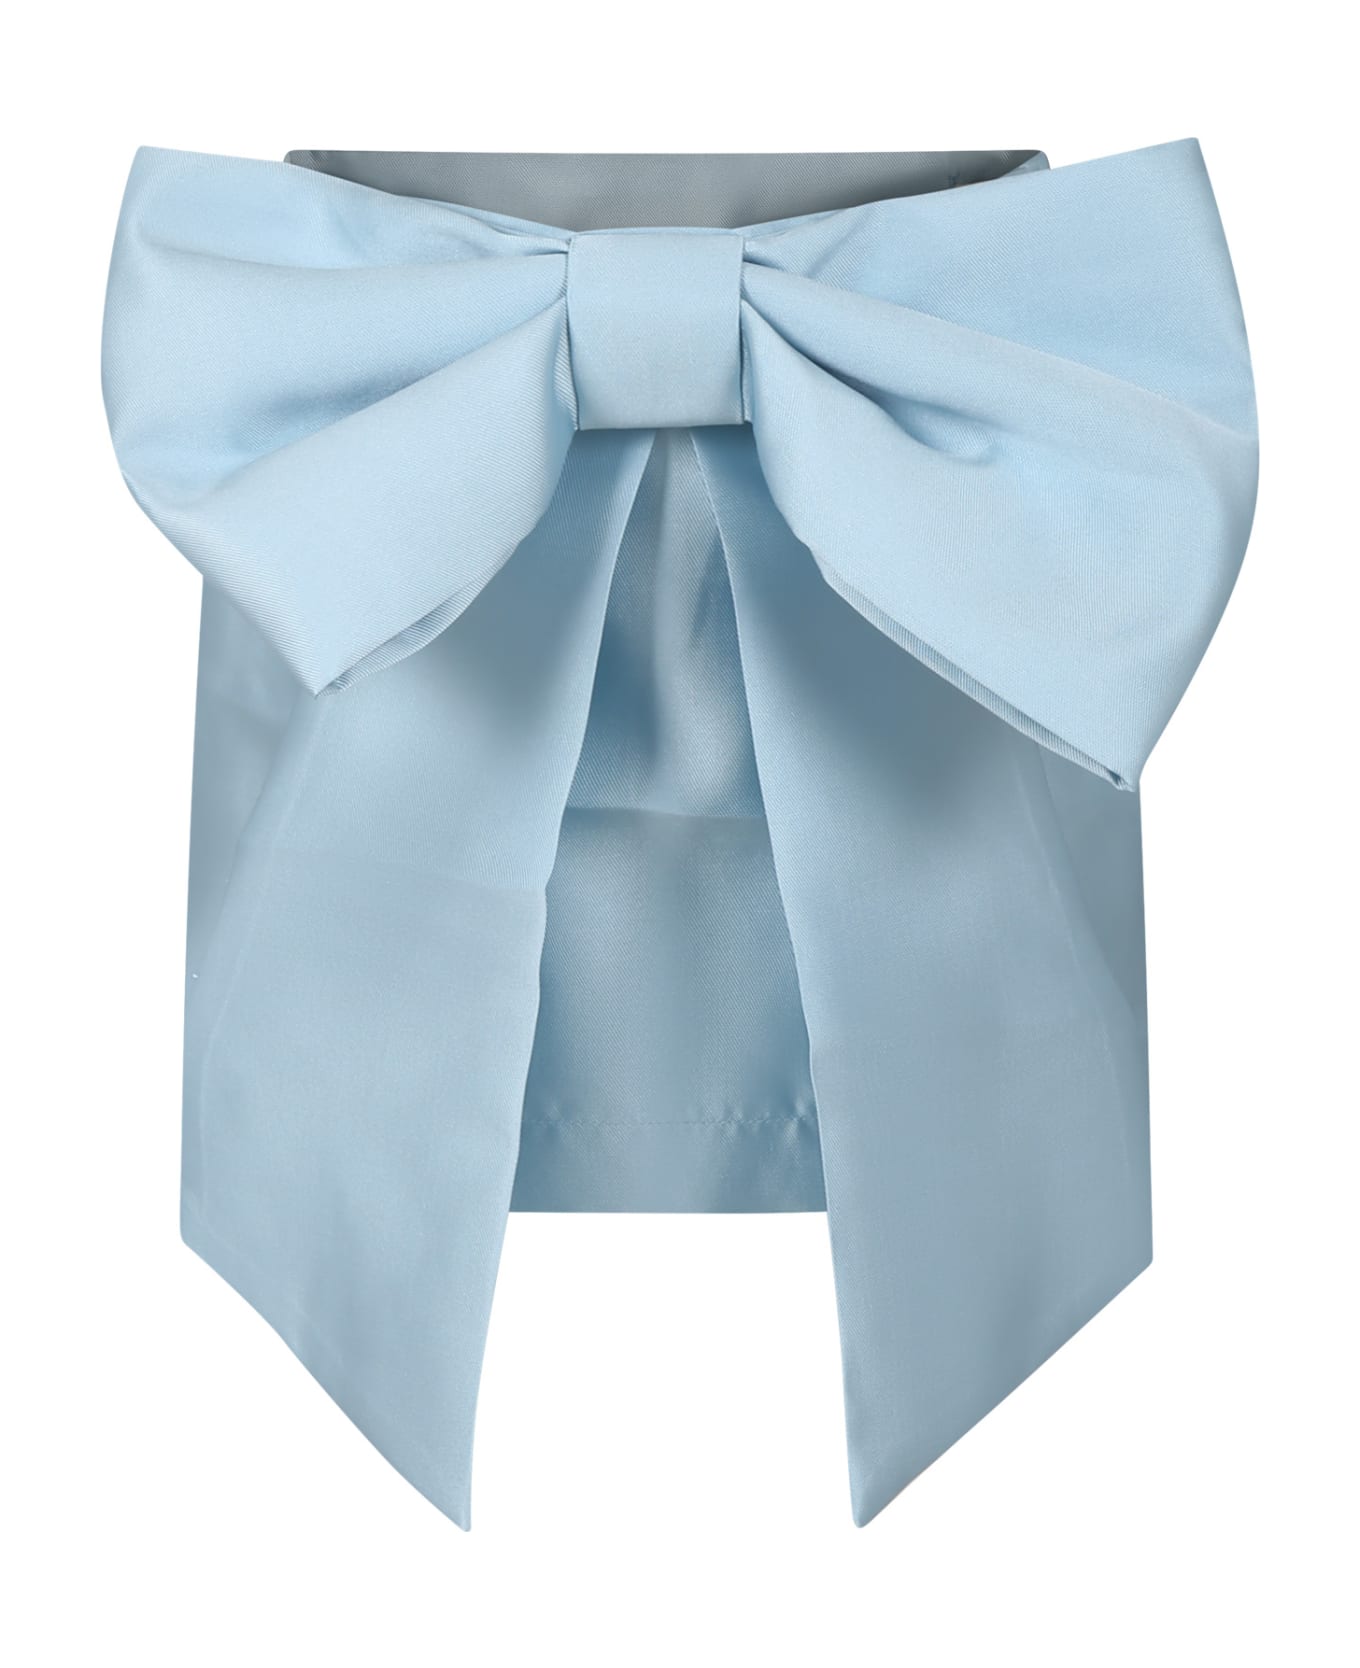 Caroline Bosmans Light Blue Skirt For Girl With Bow - Light Blue